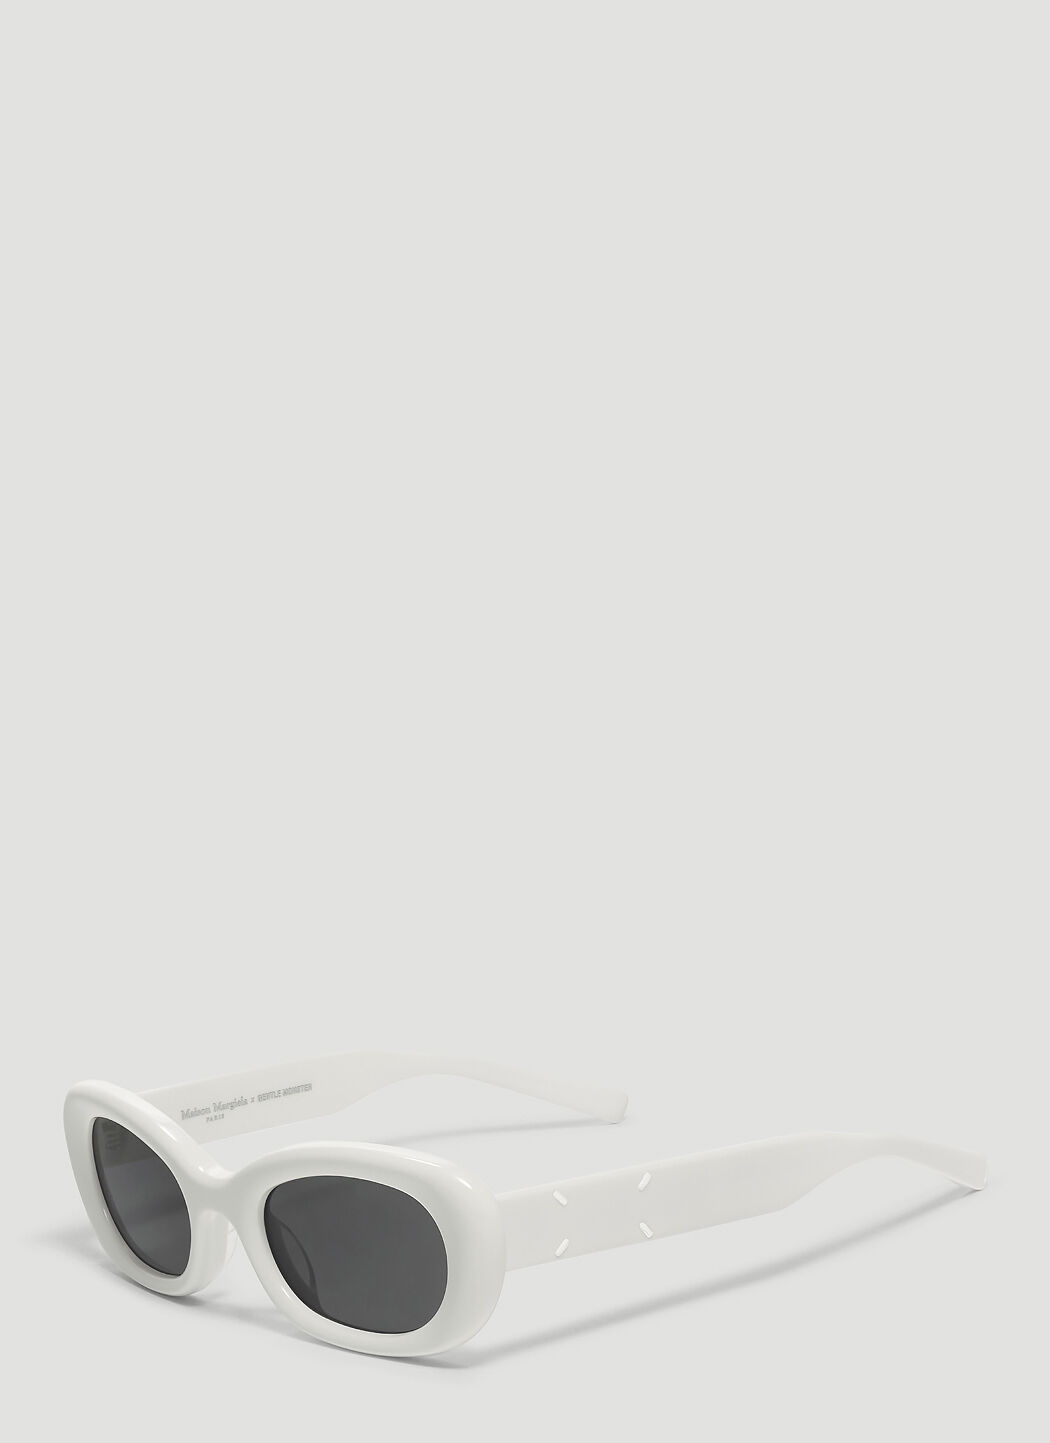 Gentle Monster Unisex x Maison Margiela MM004 Sunglasses in White